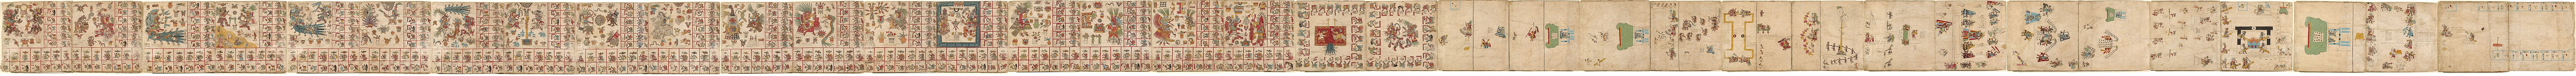 Complete Codex Borbonicus